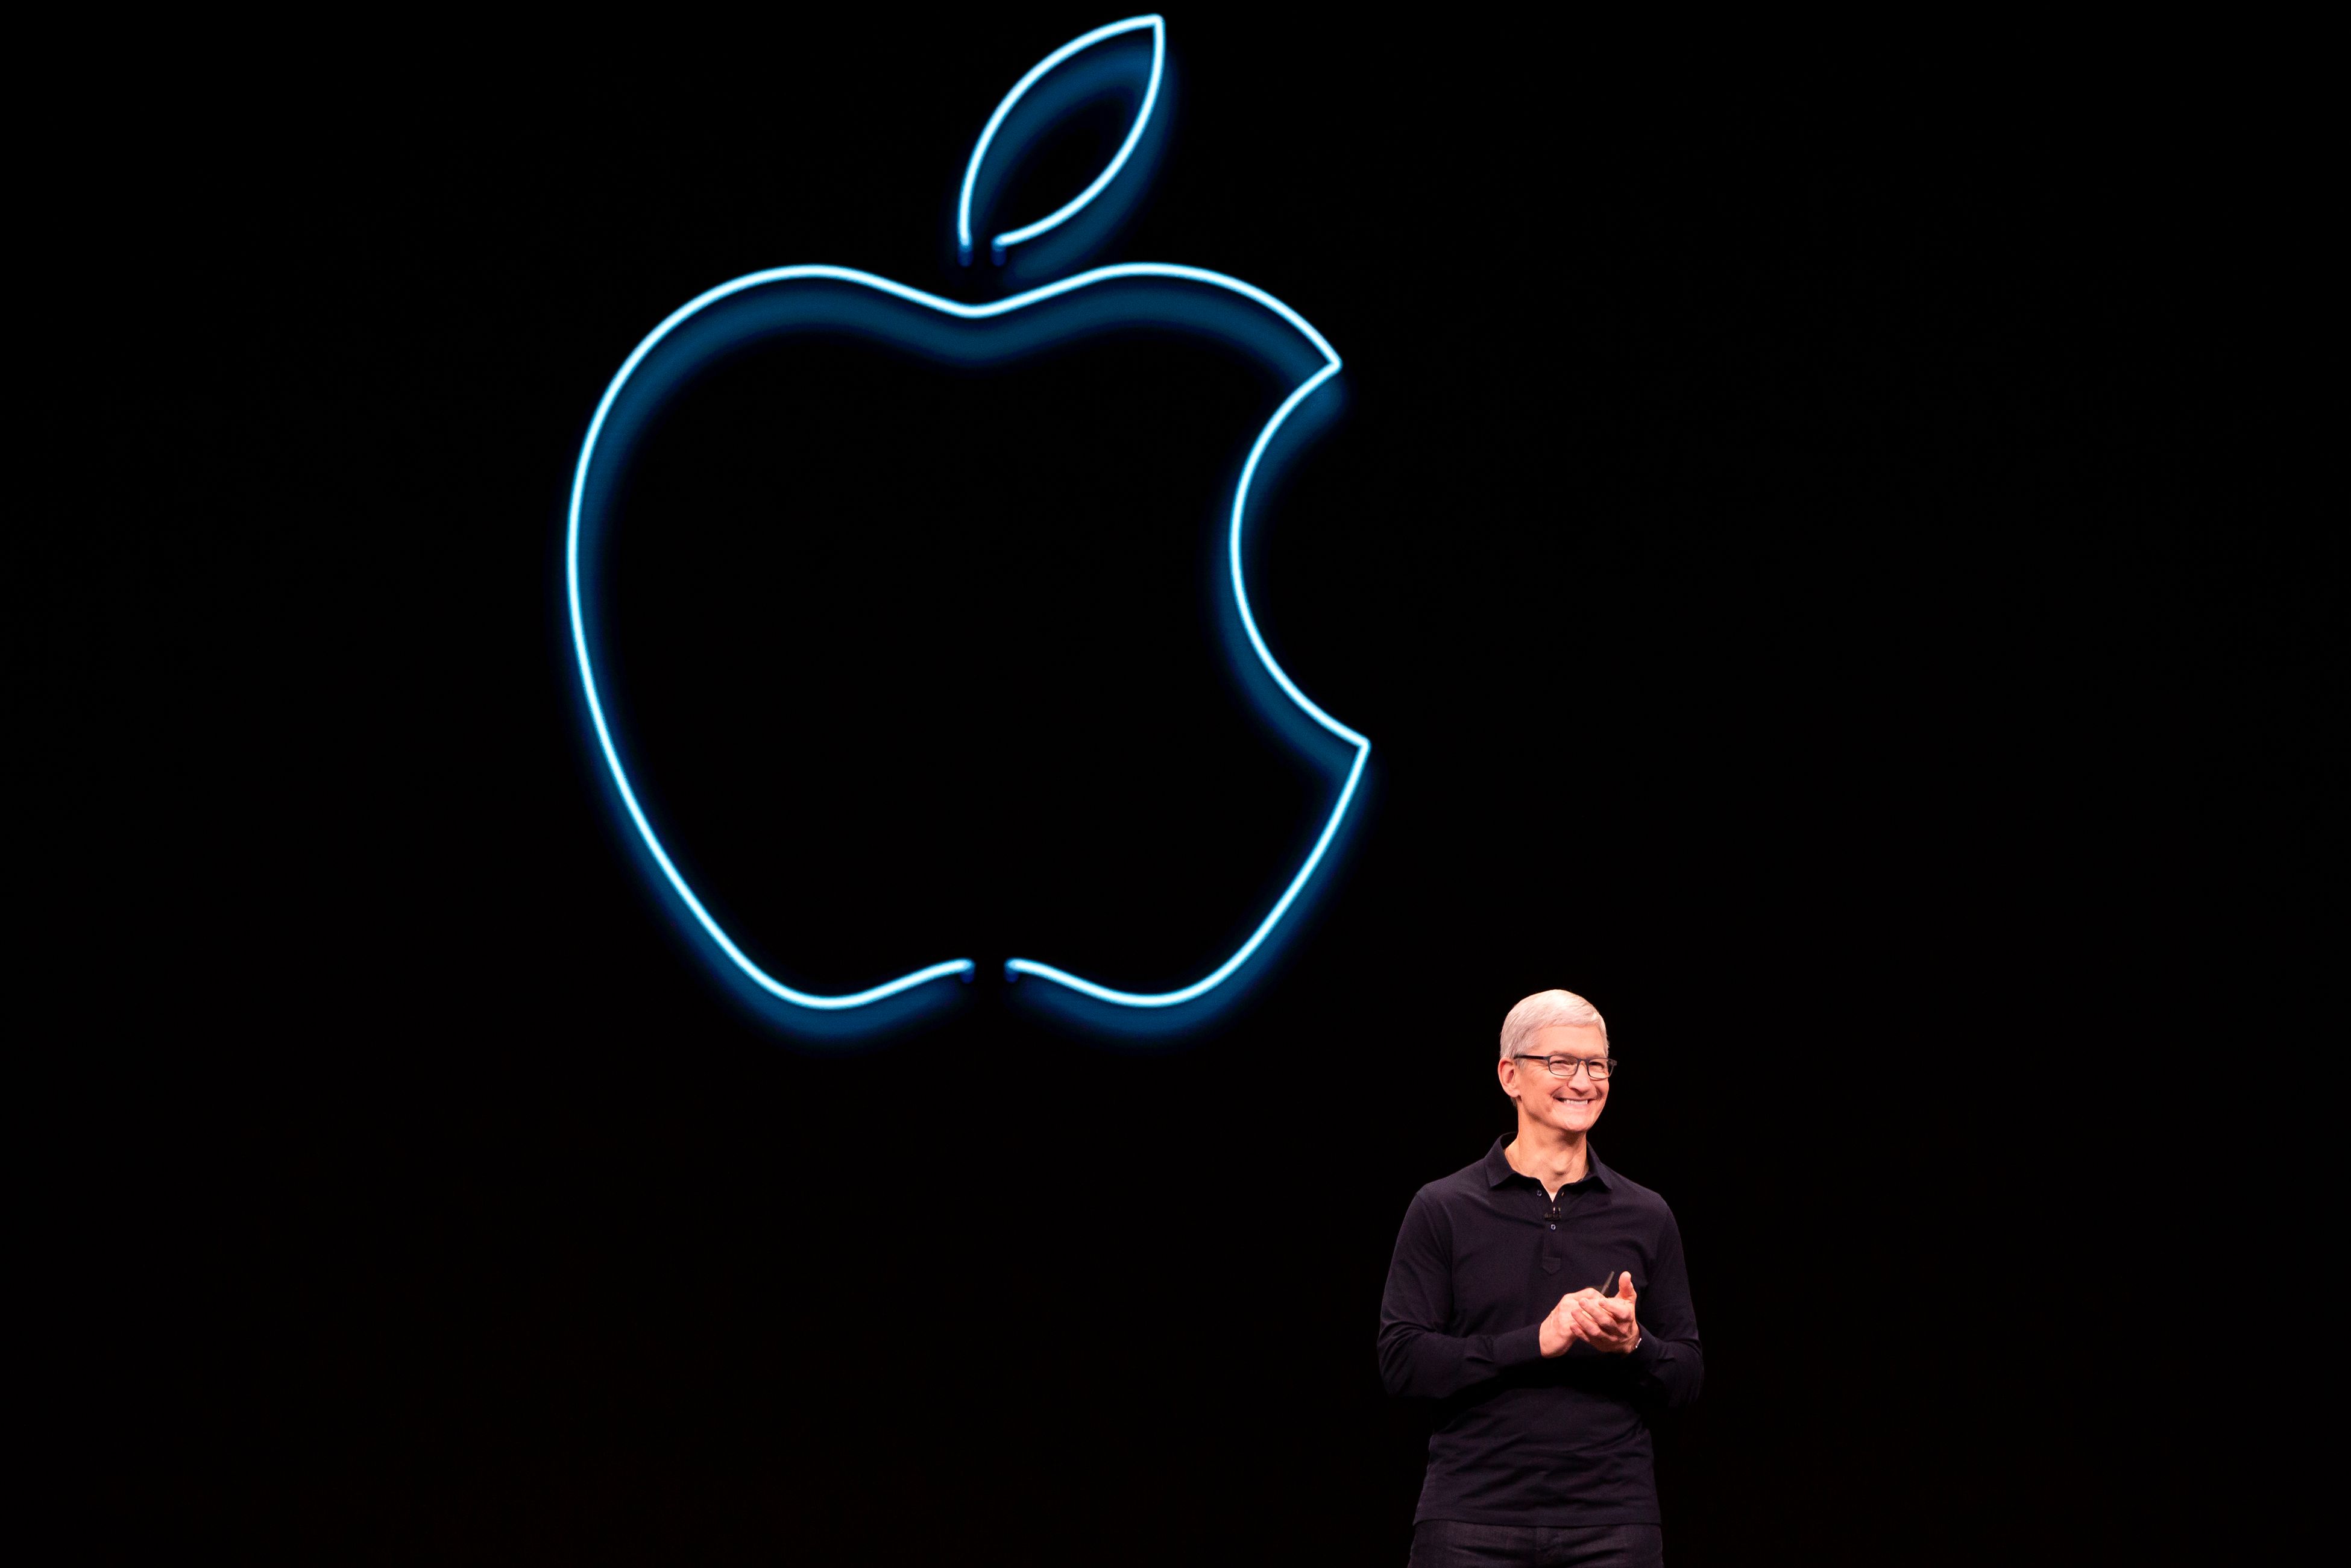 Apple Pratinjau keynote September 2019: iPhone 11, Macbook Pro 16in dan banyak lagi